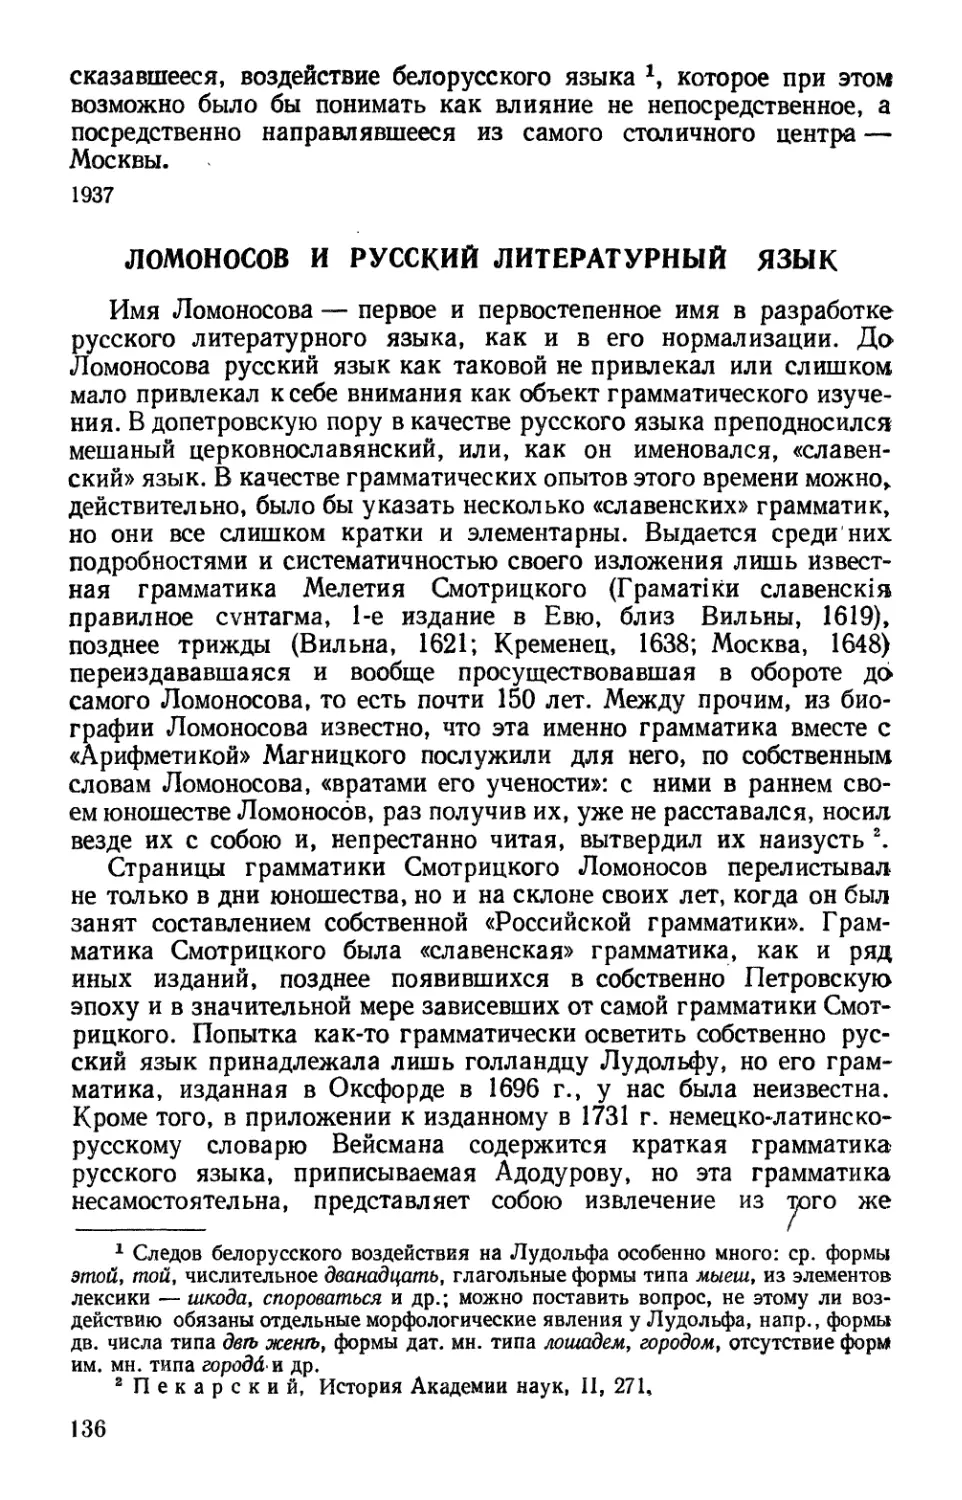 Ломоносов и русский литературный язык